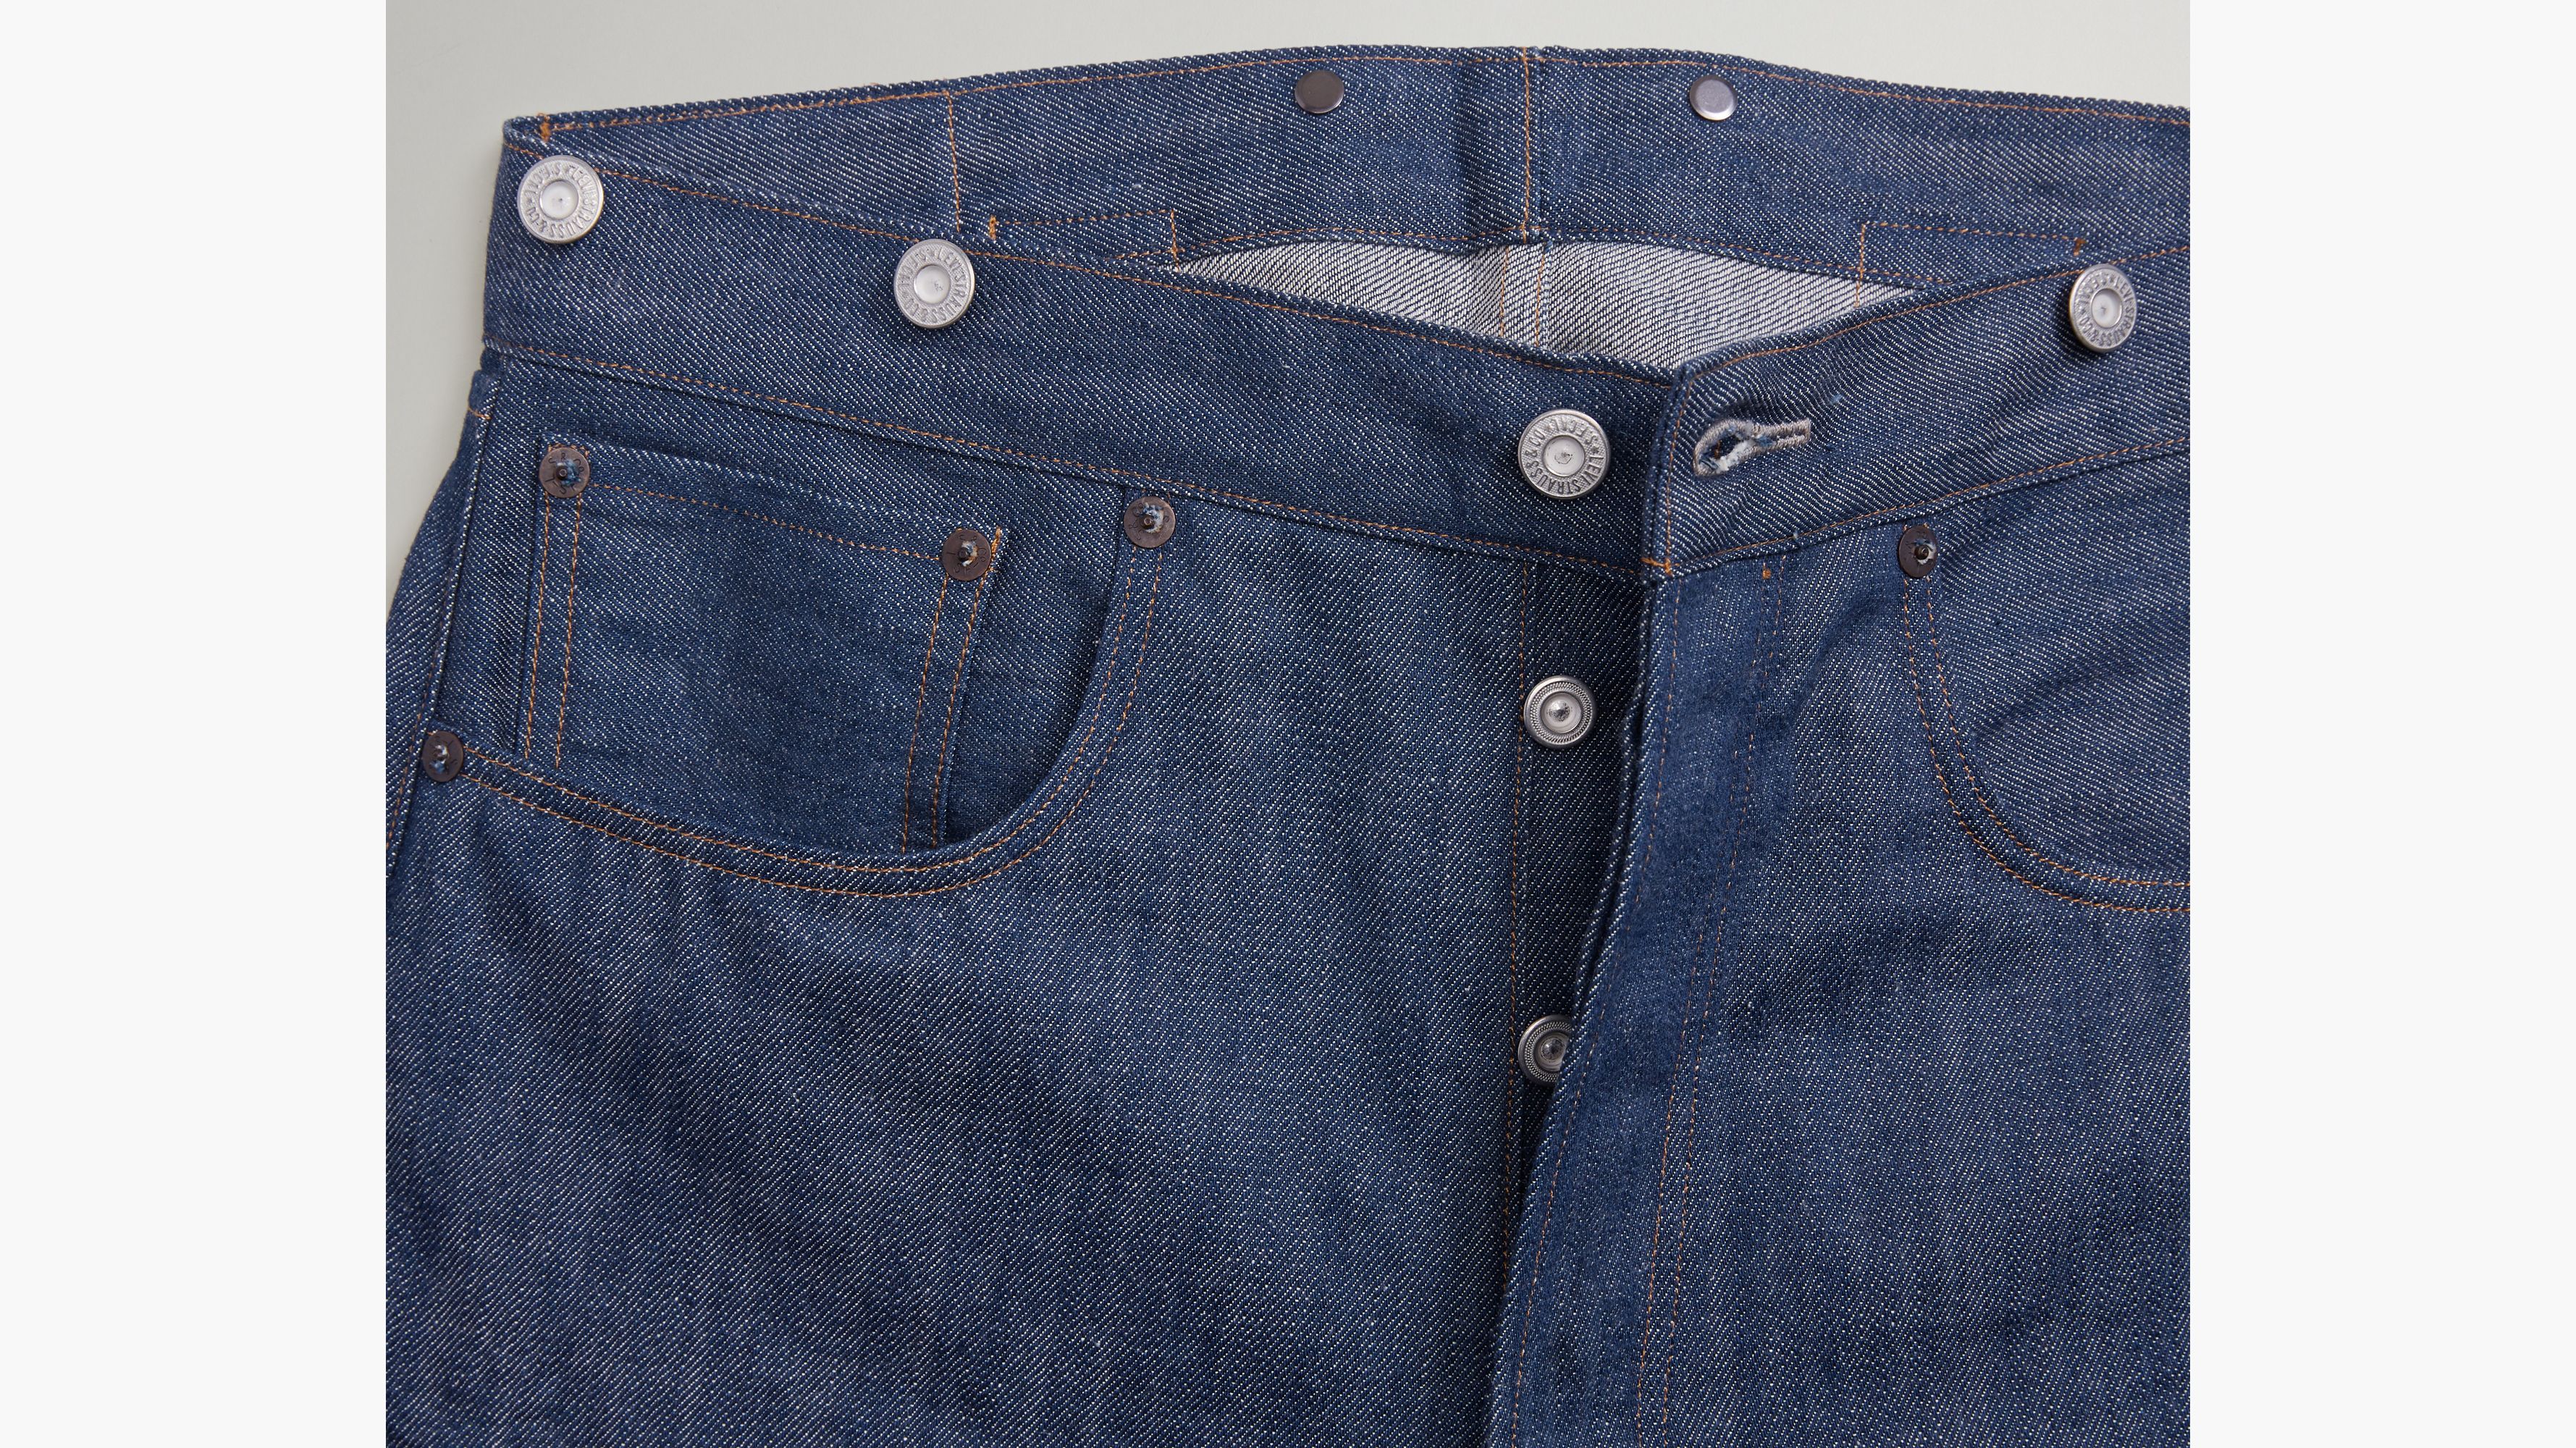 LVC LEVIS Vintage Clothing 1890 501 Bandit Selvedge Jeans Cotton Blue  Men's 27